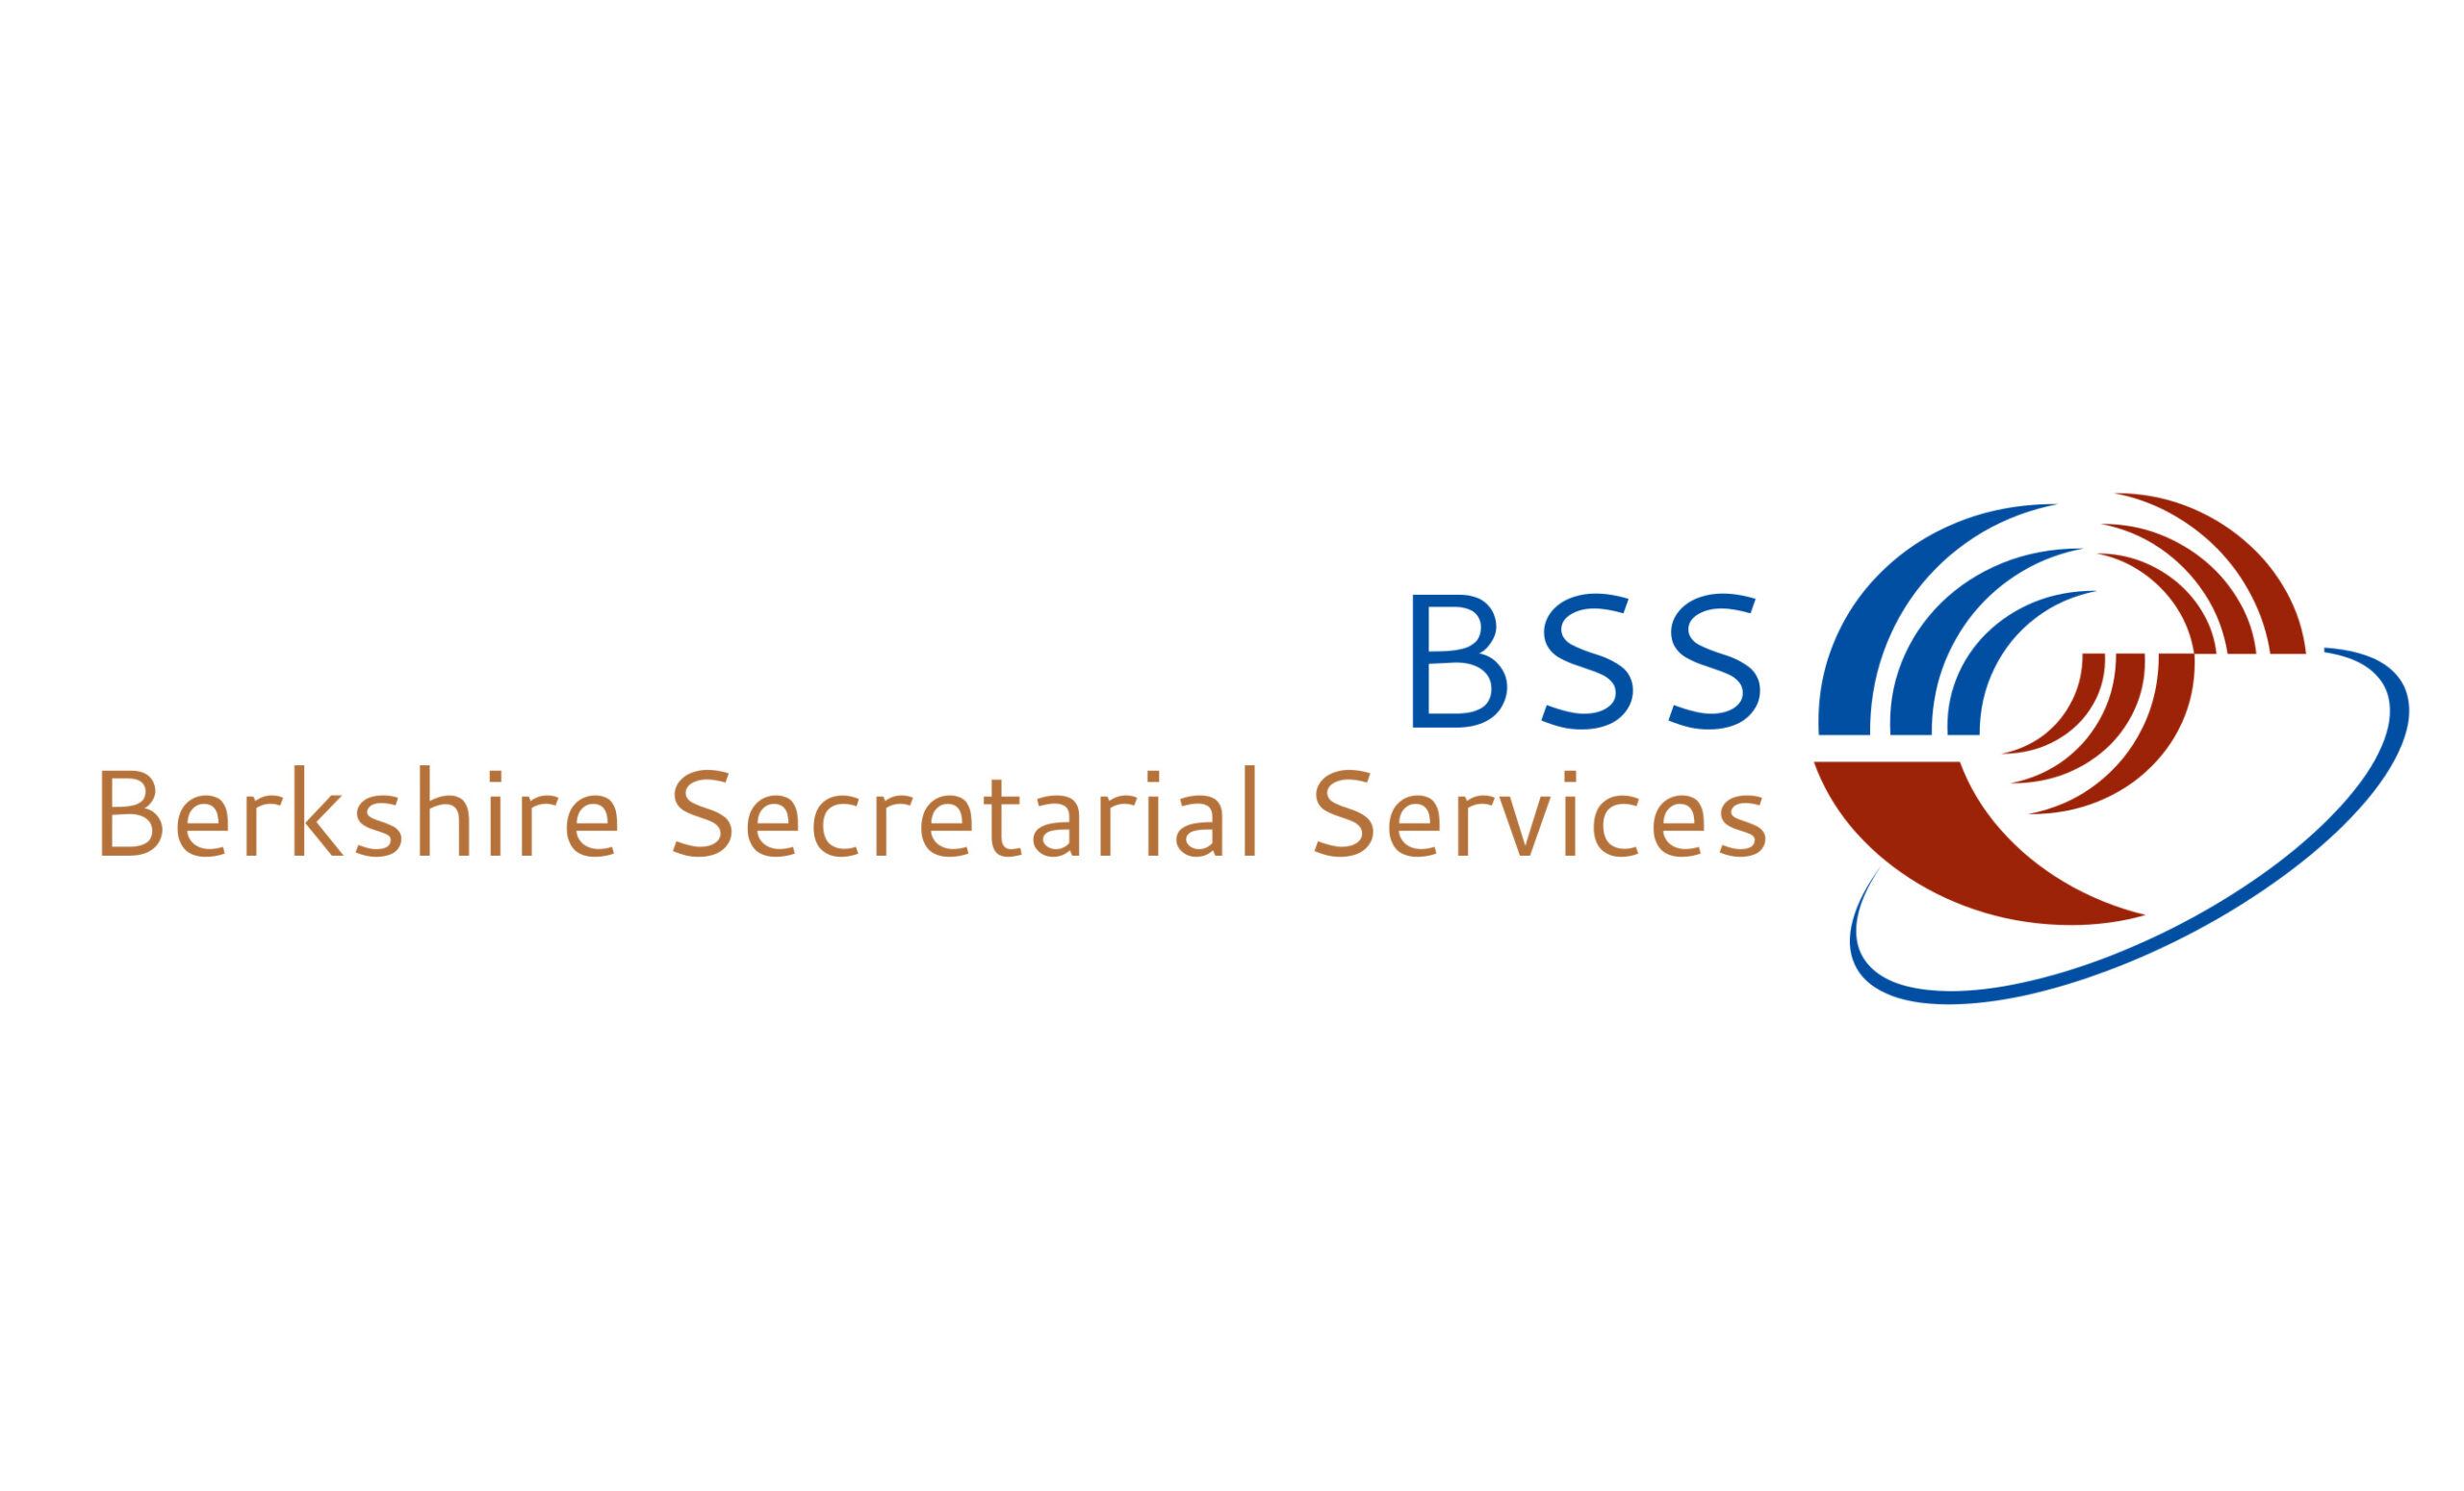 Berkshire Secretarial Services